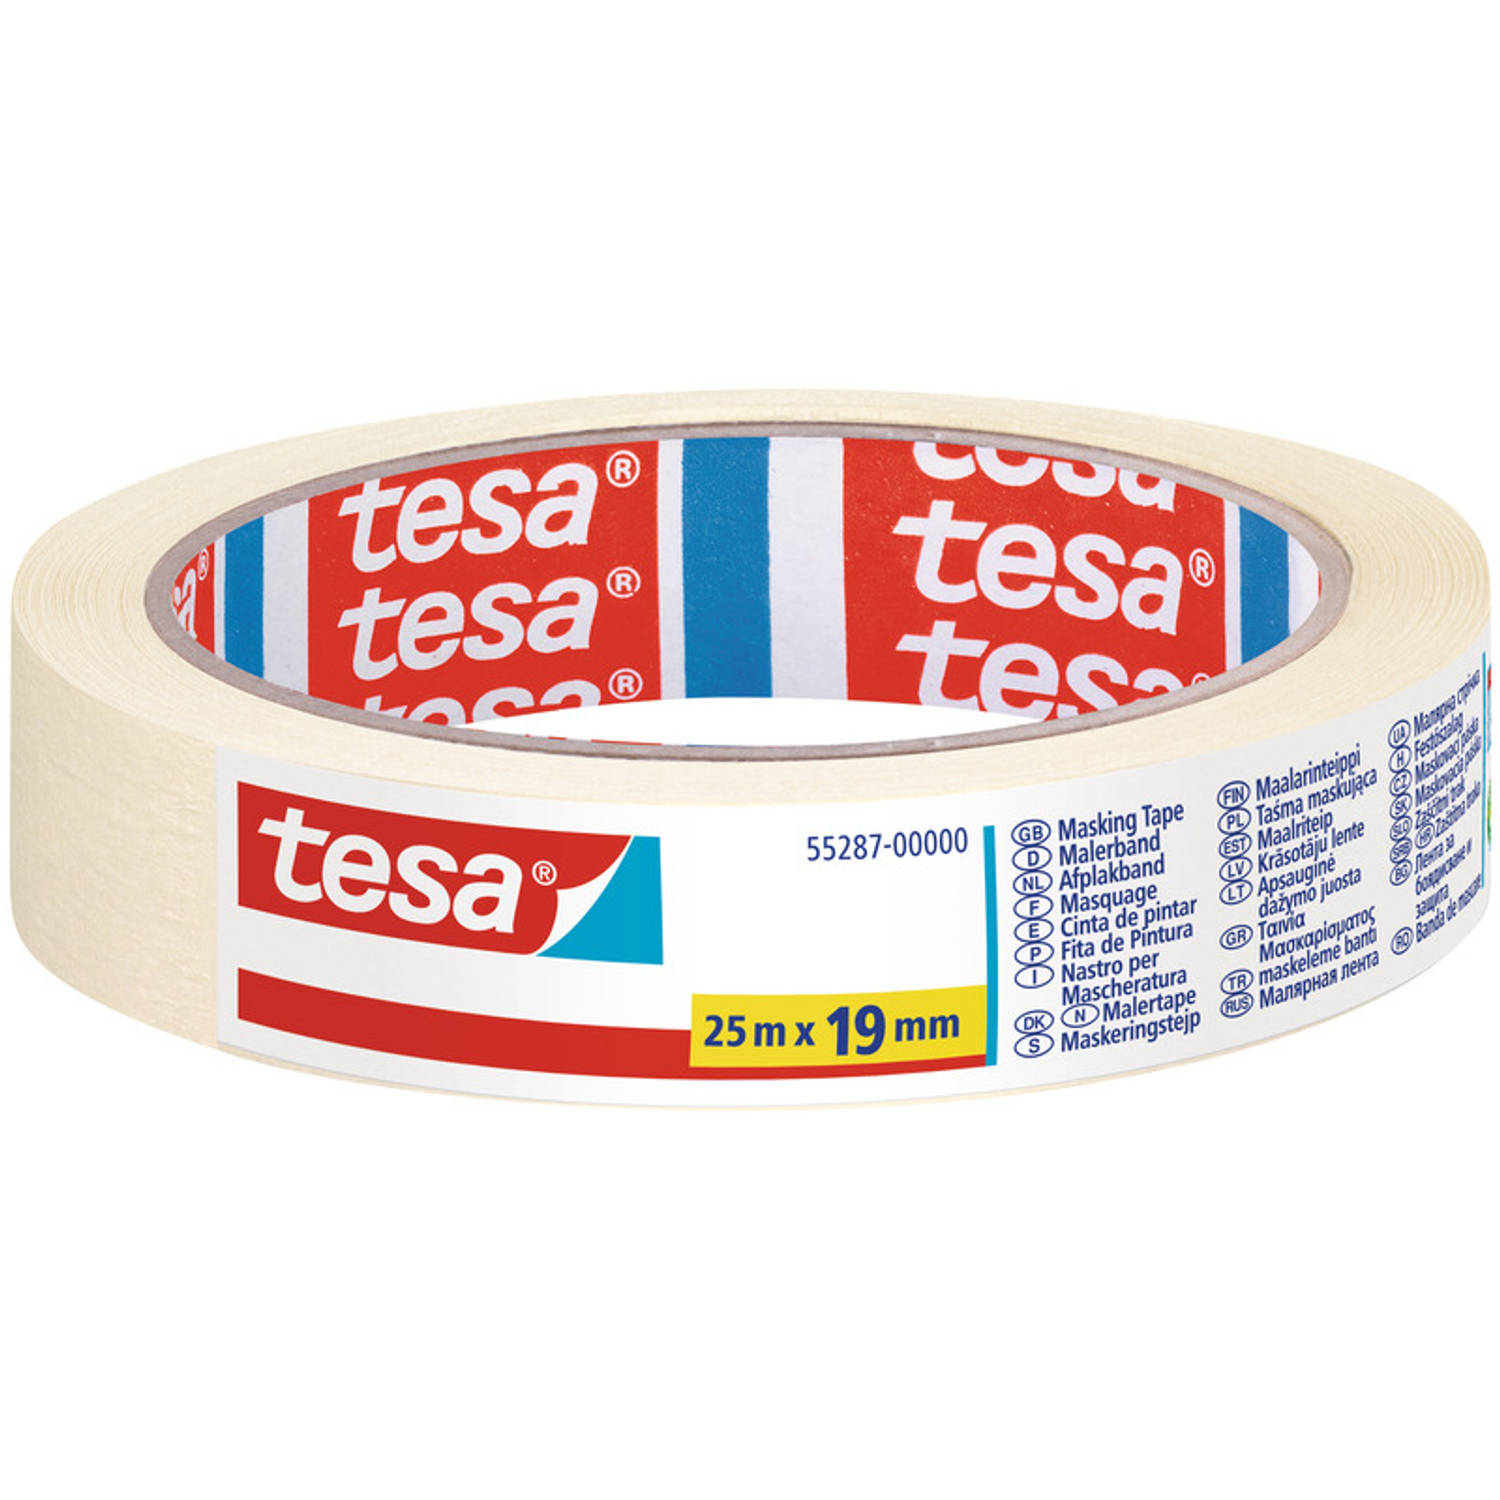 Afplaktape-schilderstape 19 Mm X 25 M Verf Afplakband-tape Maskeertape Tesa Masking Tape